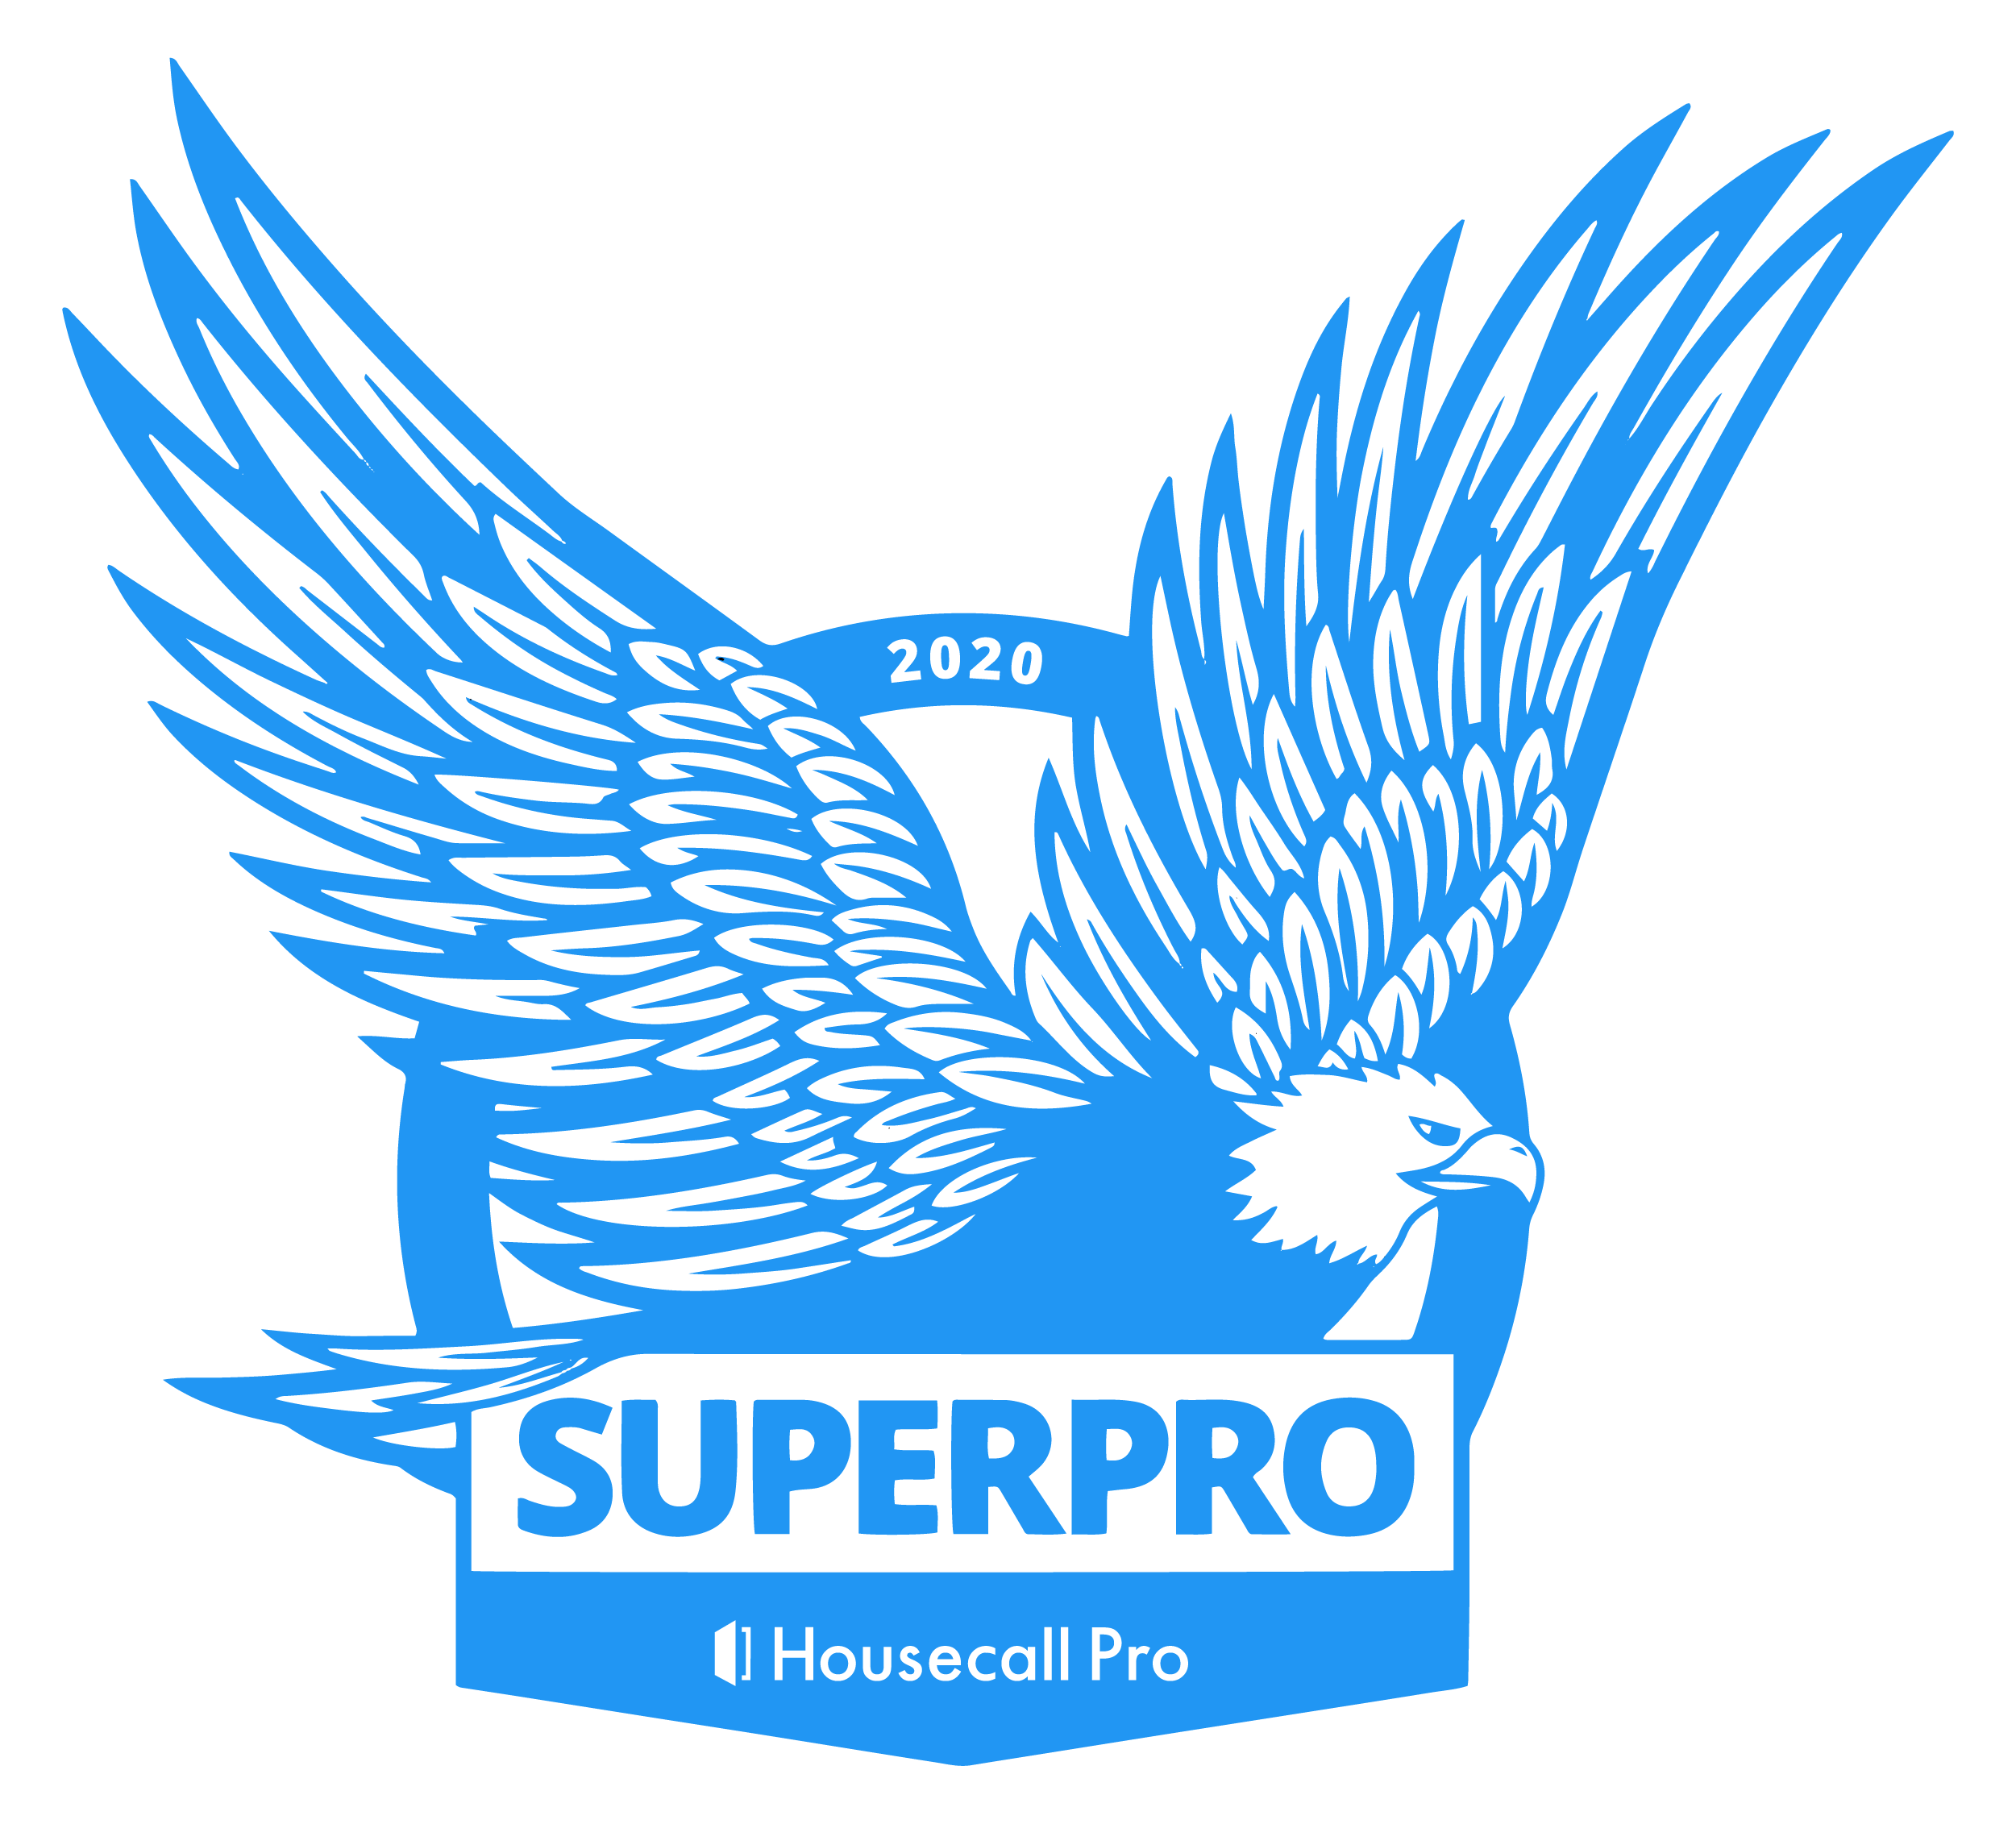 2020 HouseCall Pro Superpro